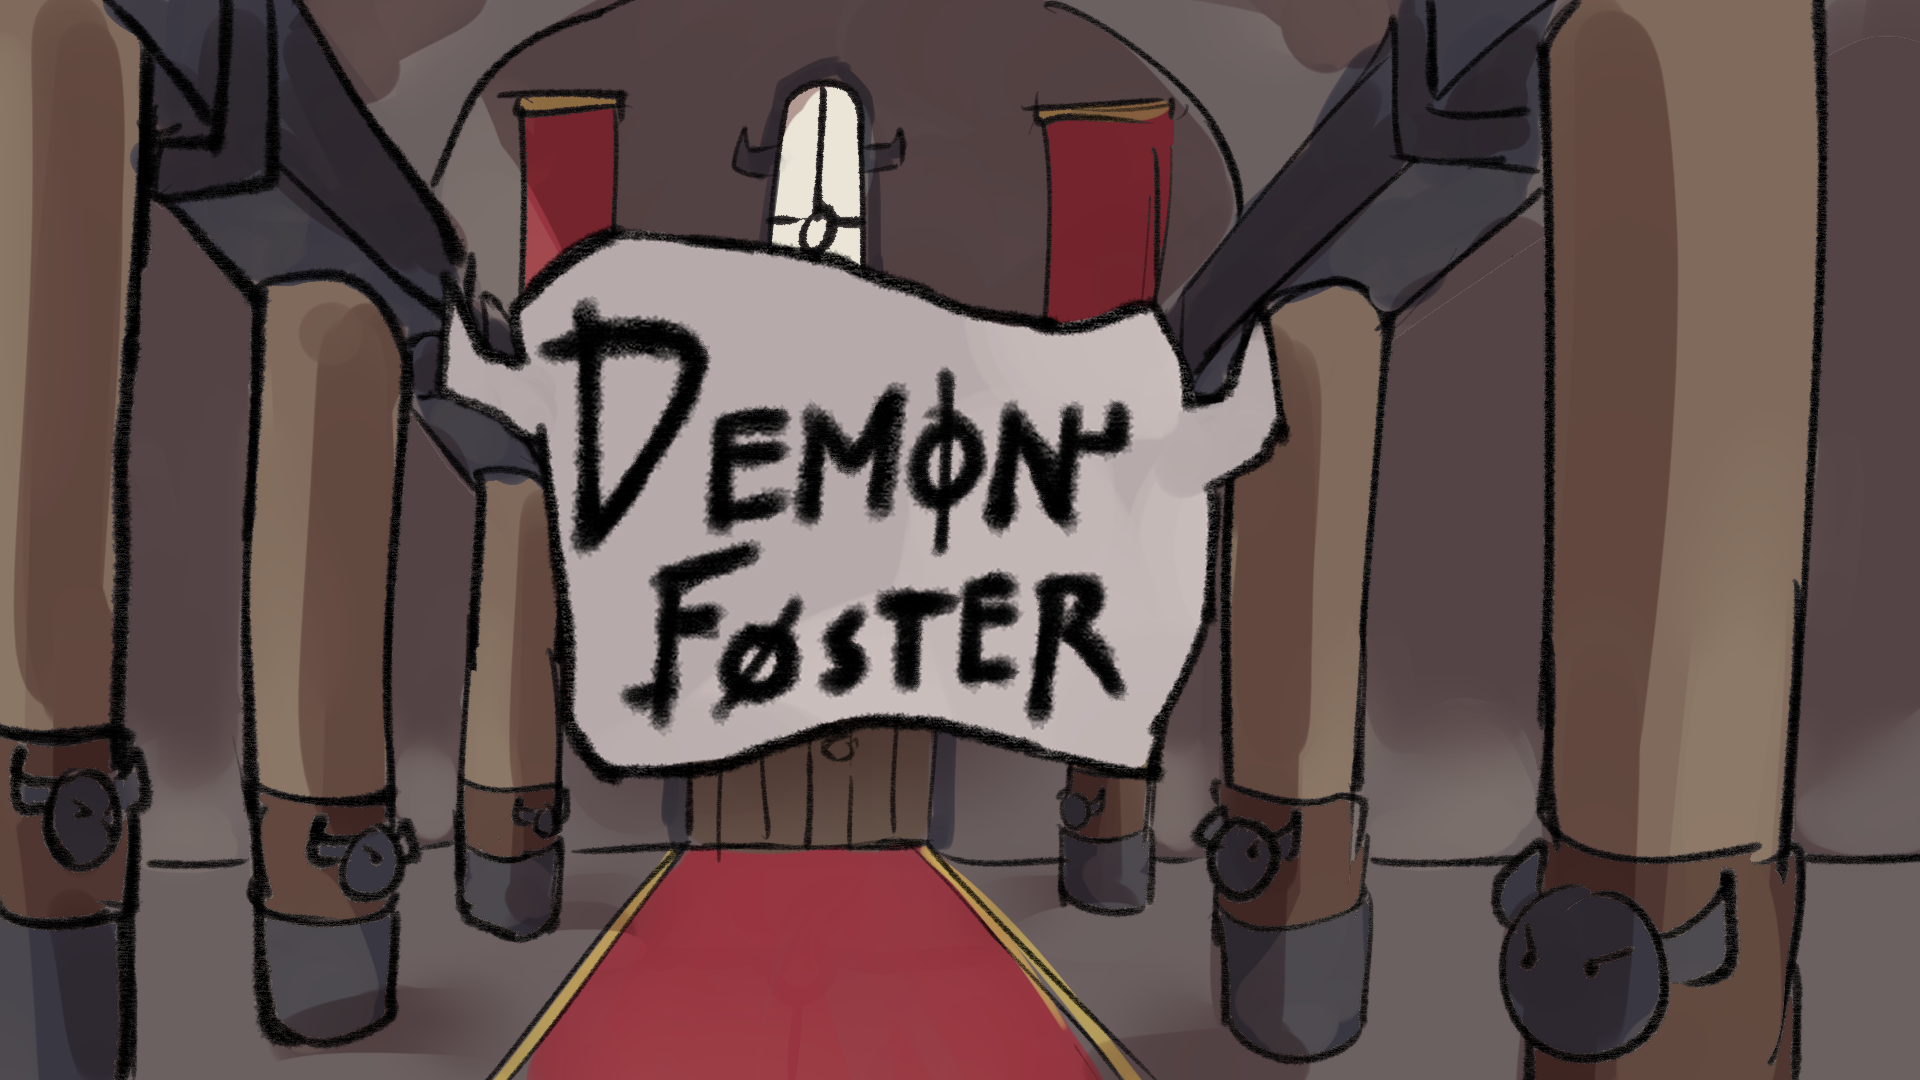 Demon Foster